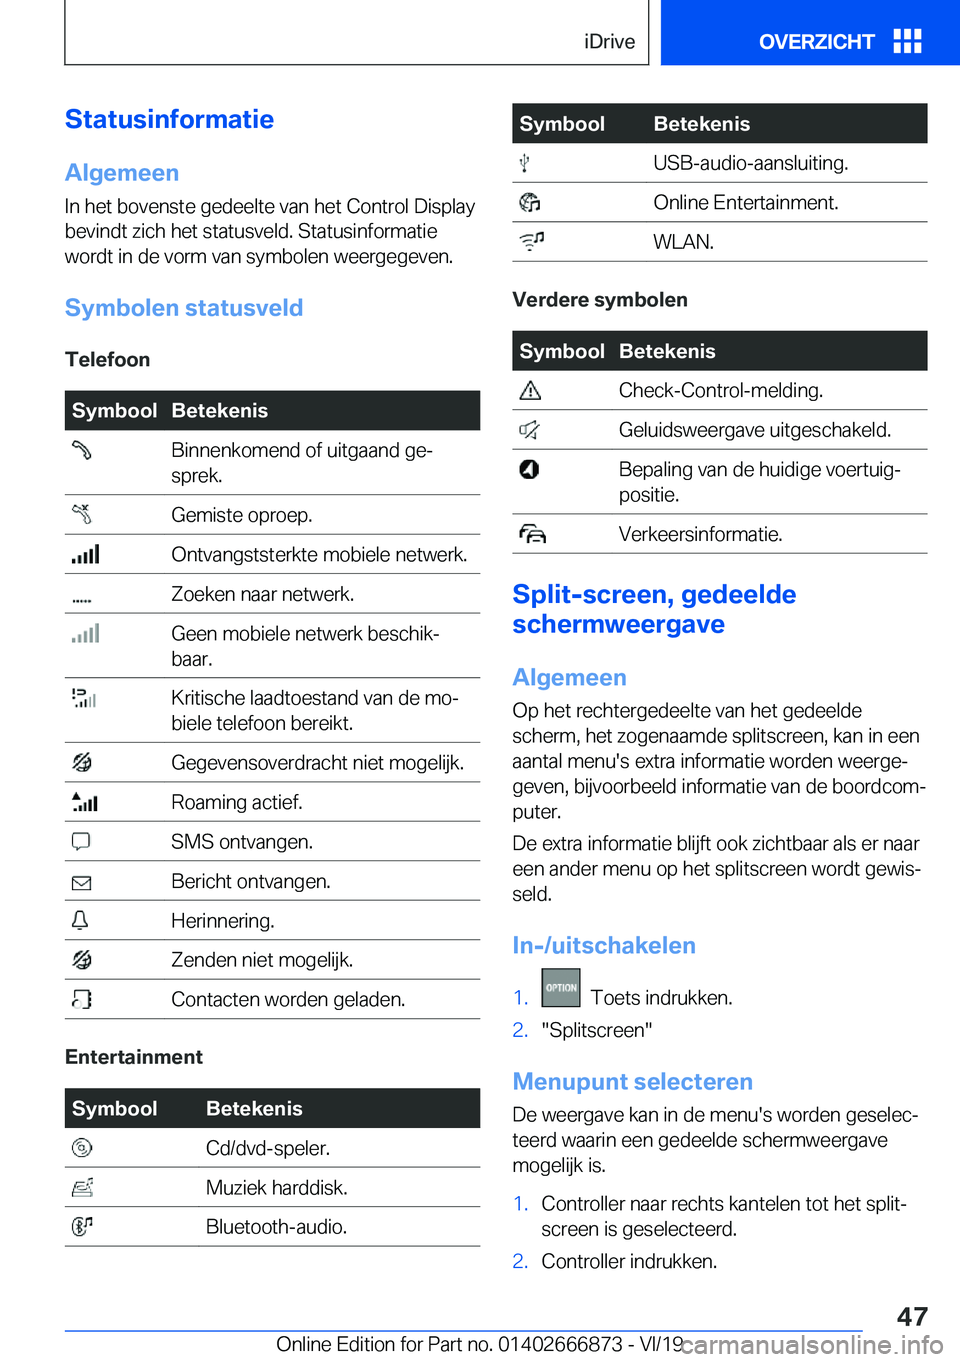 BMW X4 M 2020  Instructieboekjes (in Dutch) �S�t�a�t�u�s�i�n�f�o�r�m�a�t�i�e
�A�l�g�e�m�e�e�n �I�n��h�e�t��b�o�v�e�n�s�t�e��g�e�d�e�e�l�t�e��v�a�n��h�e�t��C�o�n�t�r�o�l��D�i�s�p�l�a�y�b�e�v�i�n�d�t��z�i�c�h��h�e�t��s�t�a�t�u�s�v�e�l�d